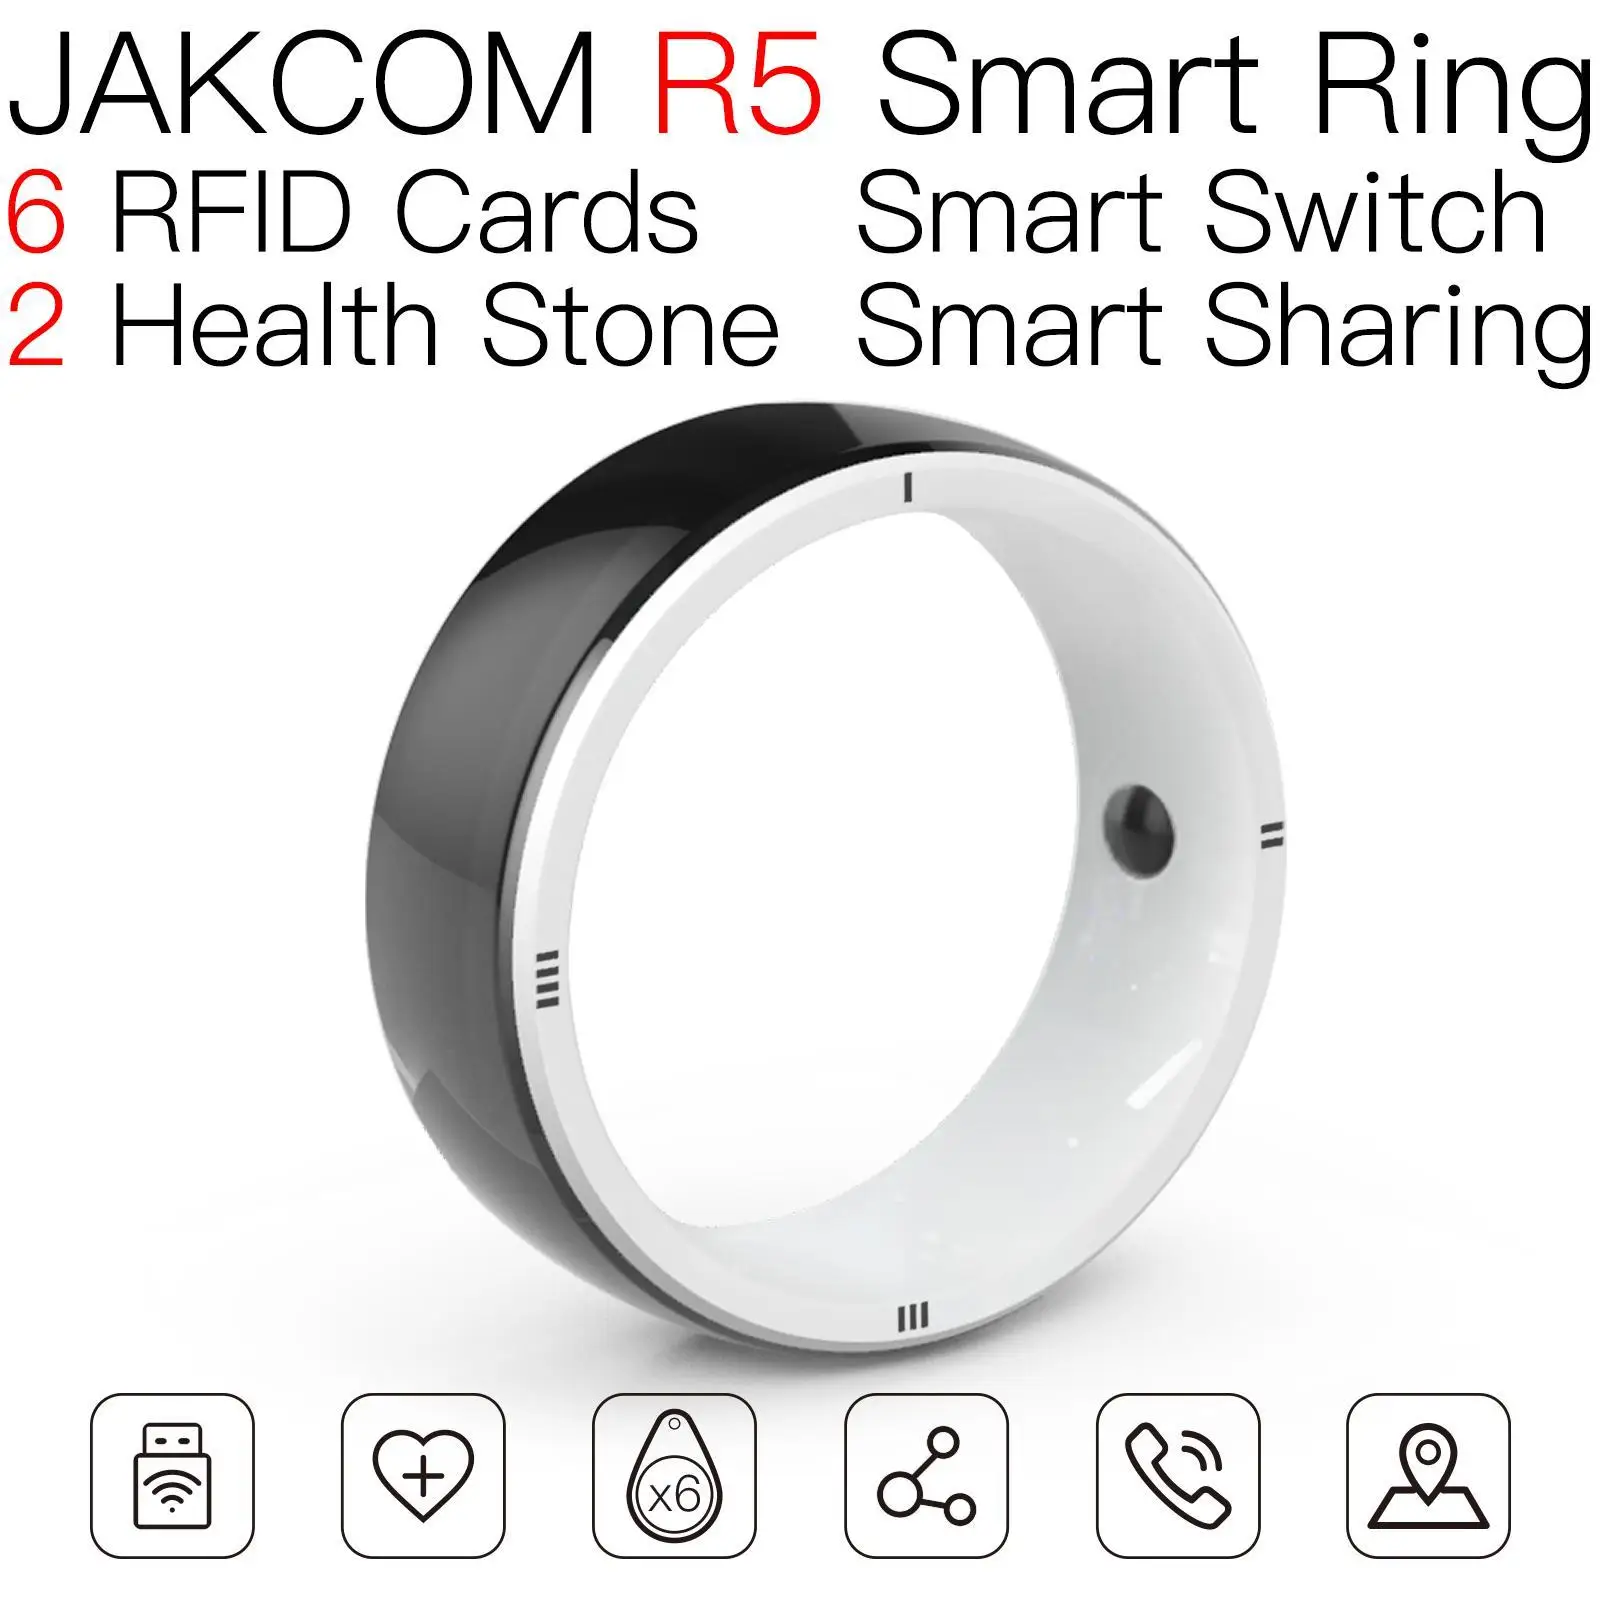 

Смарт-кольцо JAKCOM R5, новее, чем приложение для активации, смарт-карта, белый 125 кГц микрочип, Эл-метка, новый horizon rfid